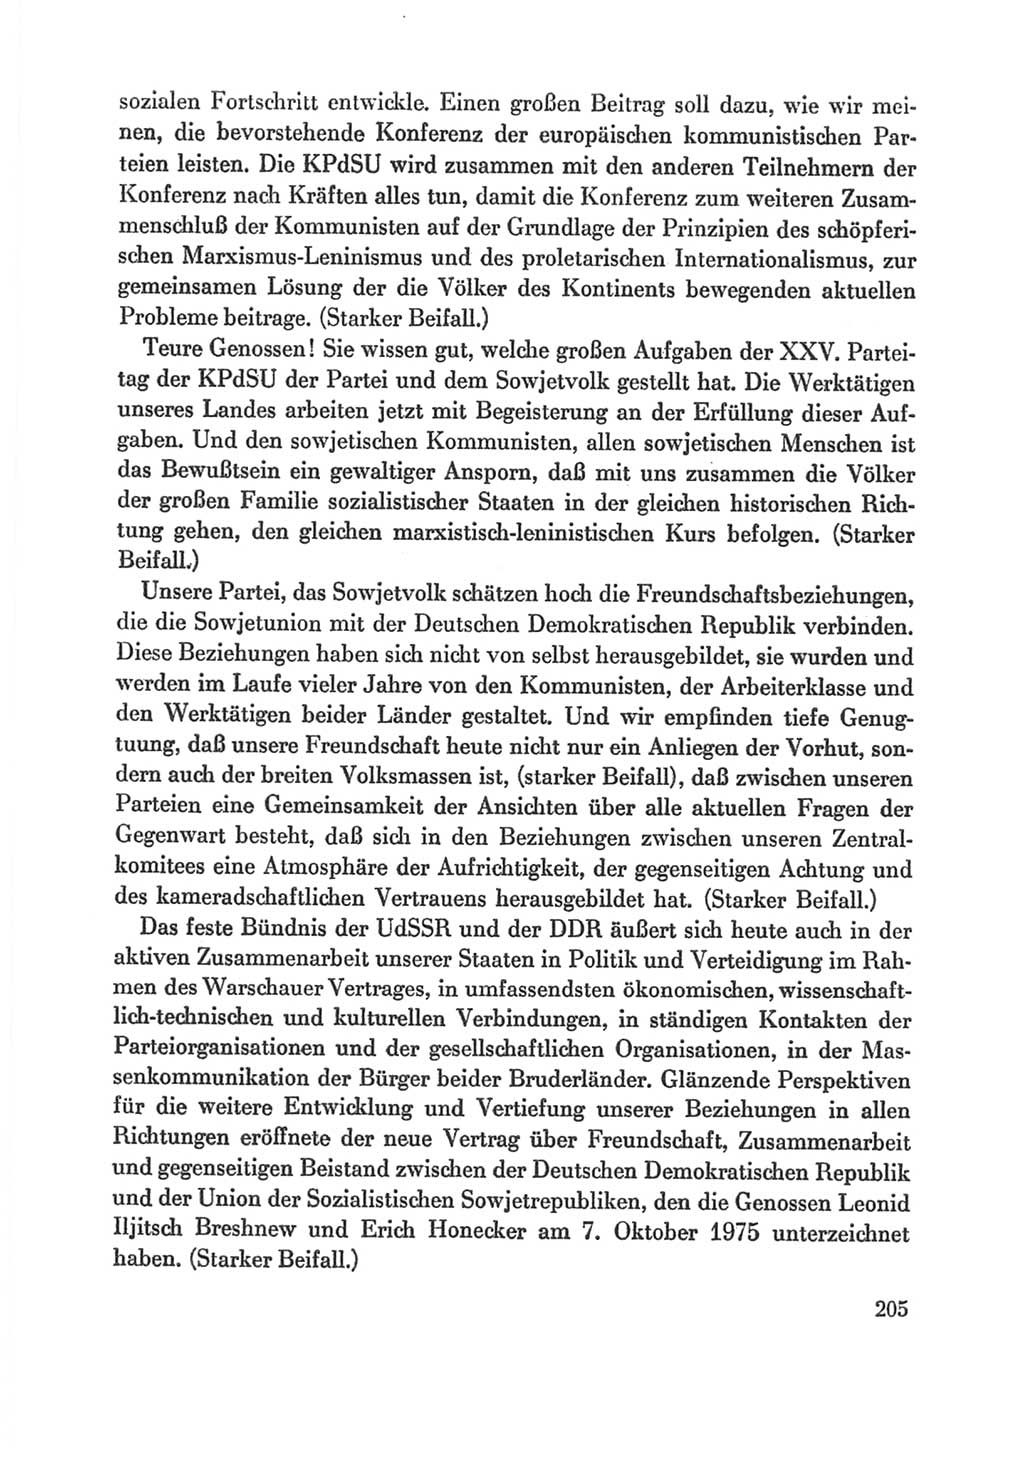 Protokoll der Verhandlungen des Ⅸ. Parteitages der Sozialistischen Einheitspartei Deutschlands (SED) [Deutsche Demokratische Republik (DDR)] 1976, Band 1, Seite 205 (Prot. Verh. Ⅸ. PT SED DDR 1976, Bd. 1, S. 205)